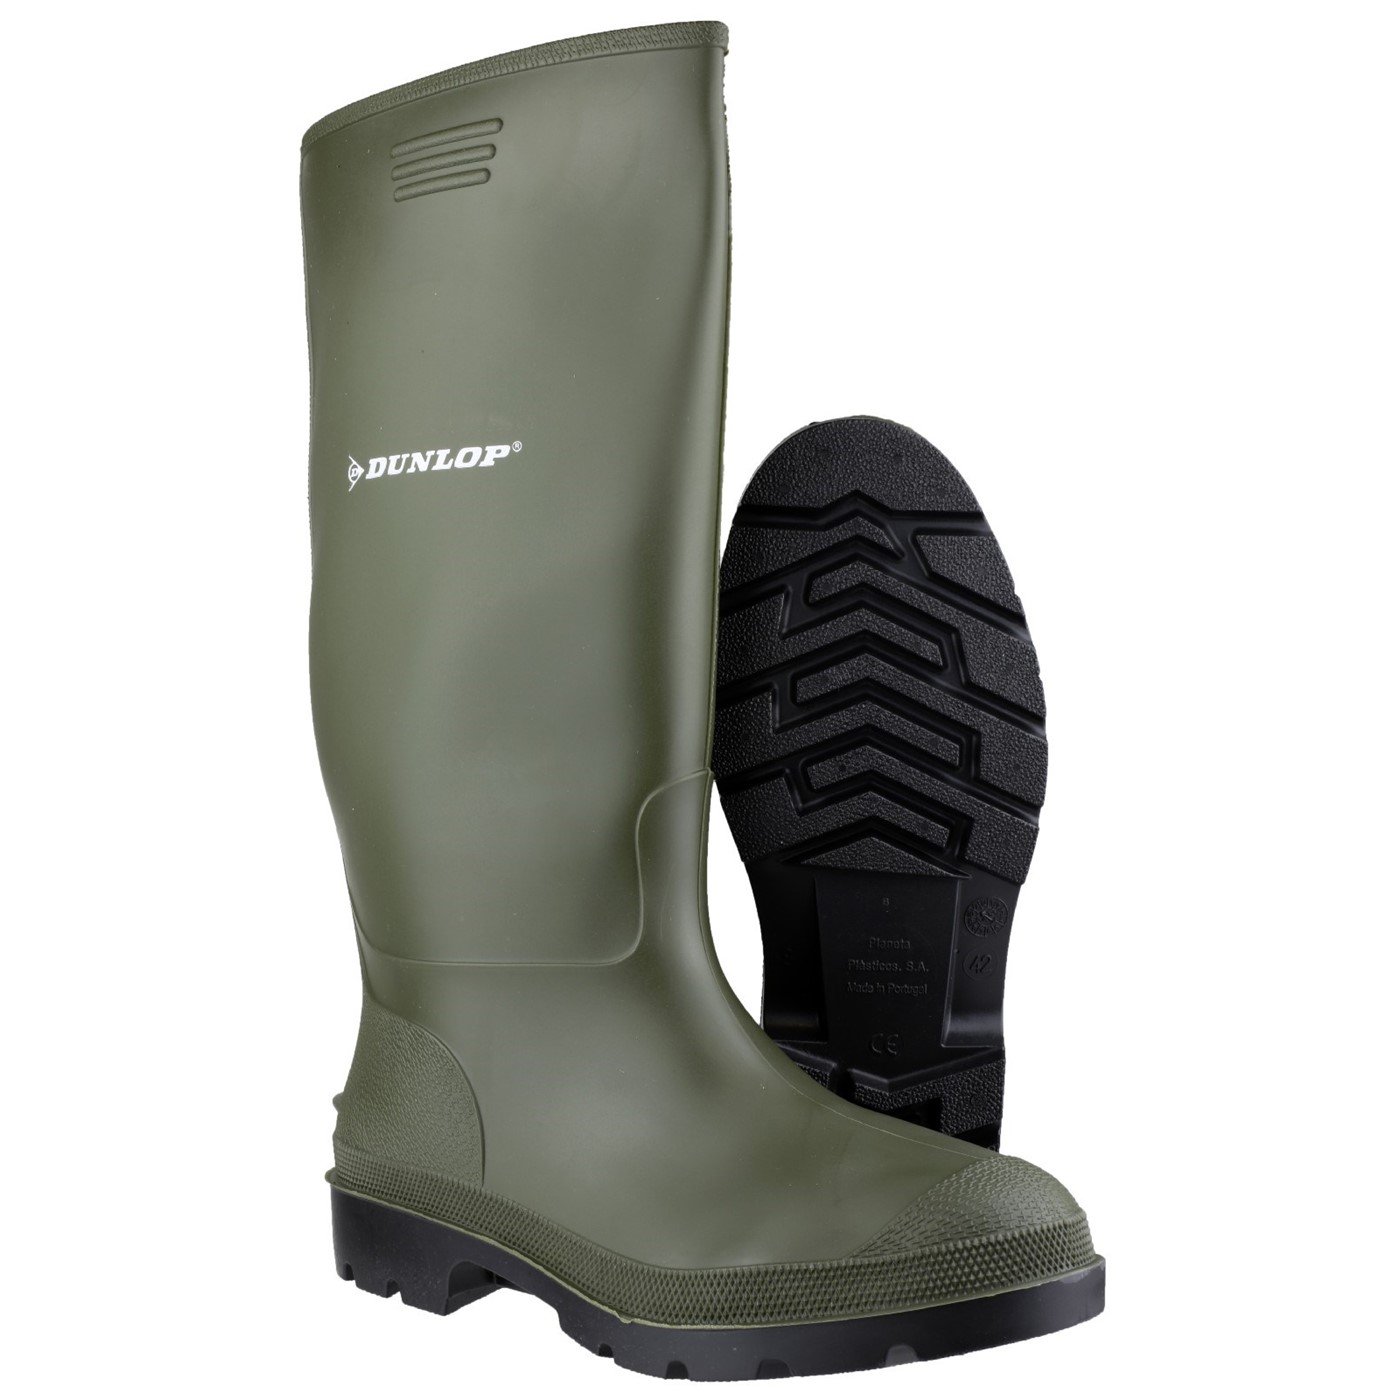 Dunlop Pricemaster Boot, Green, Size 9(43)